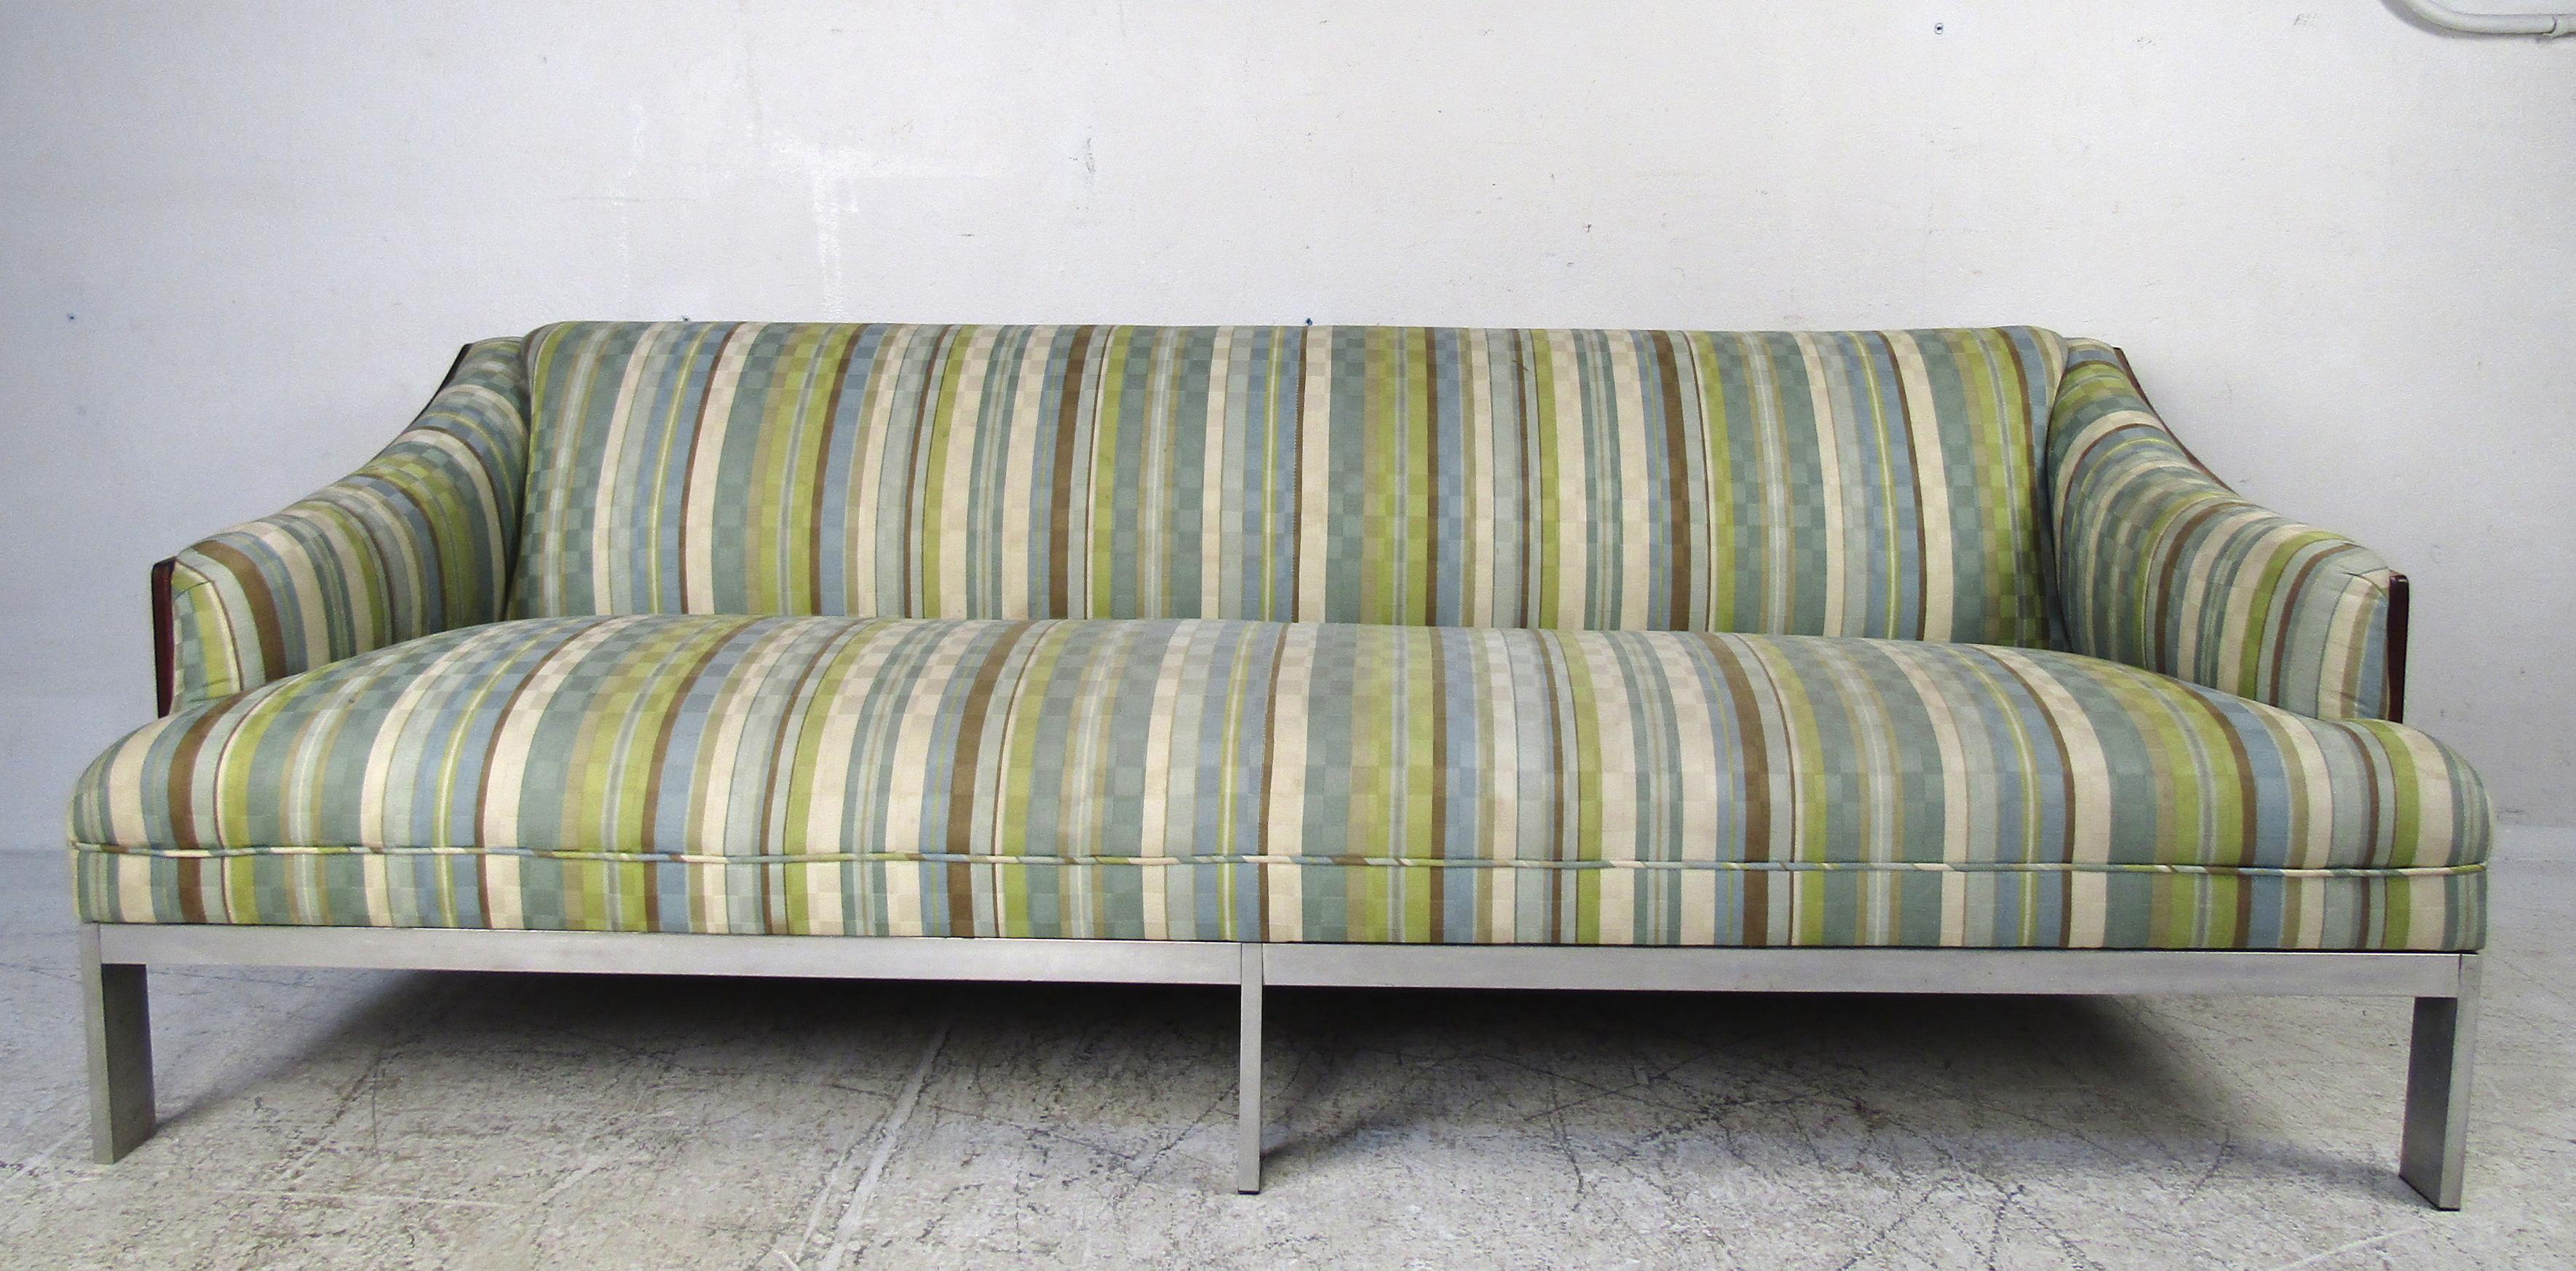 Dieses atemberaubende, moderne Vintage-Sofa hat eine Rückenlehne aus Palisander und geschwungene Seiten. Sechs verchromte Flachstangenbeine und eine gepolsterte Sitzfläche zeugen von einer hochwertigen Konstruktion und gewährleisten maximalen